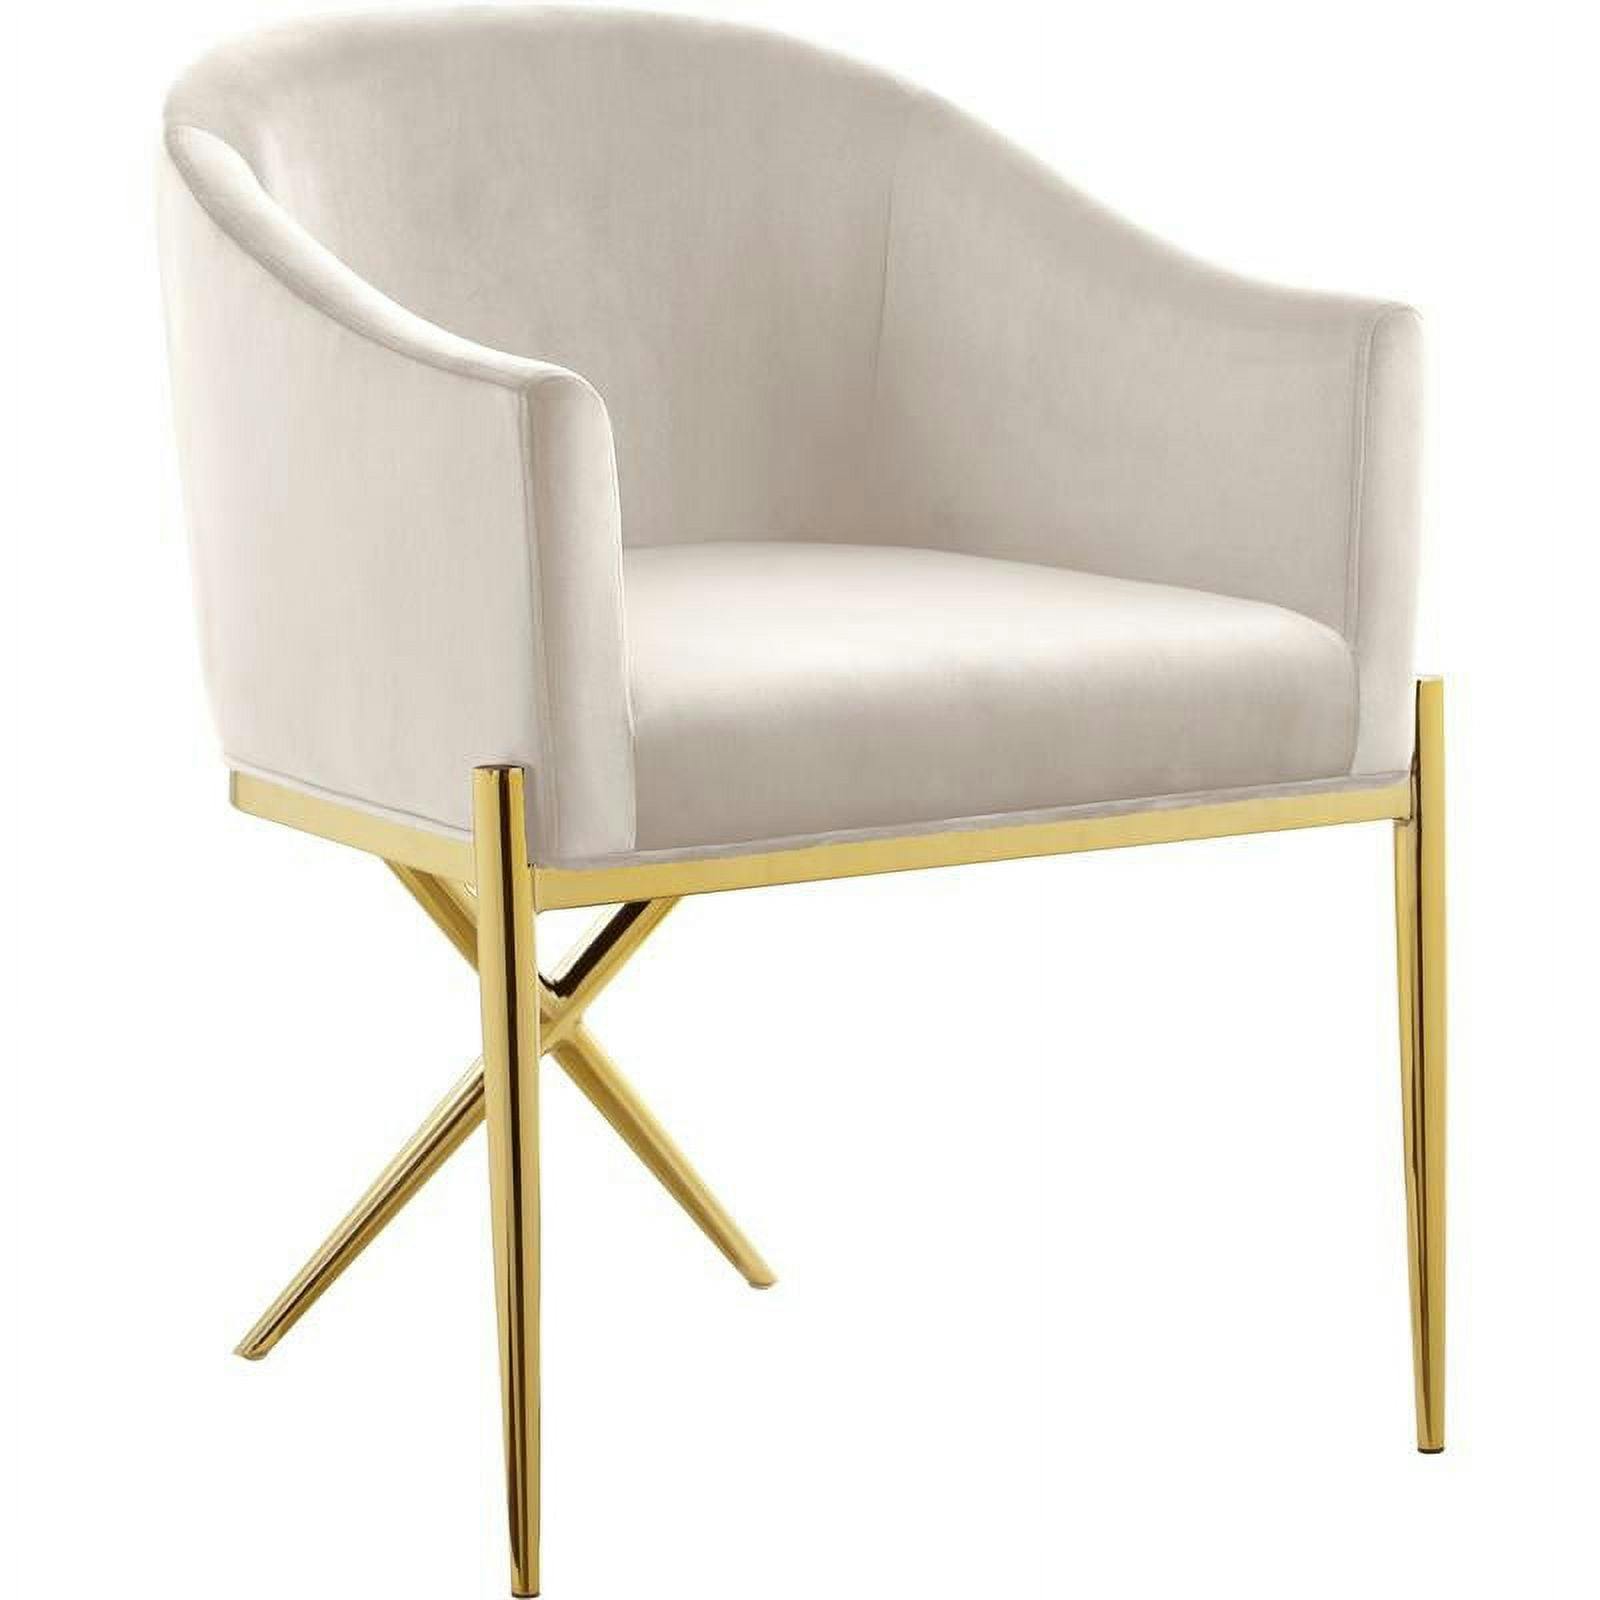 Elegant Cream Velvet Upholstered Arm Chair with Gold Metal Legs